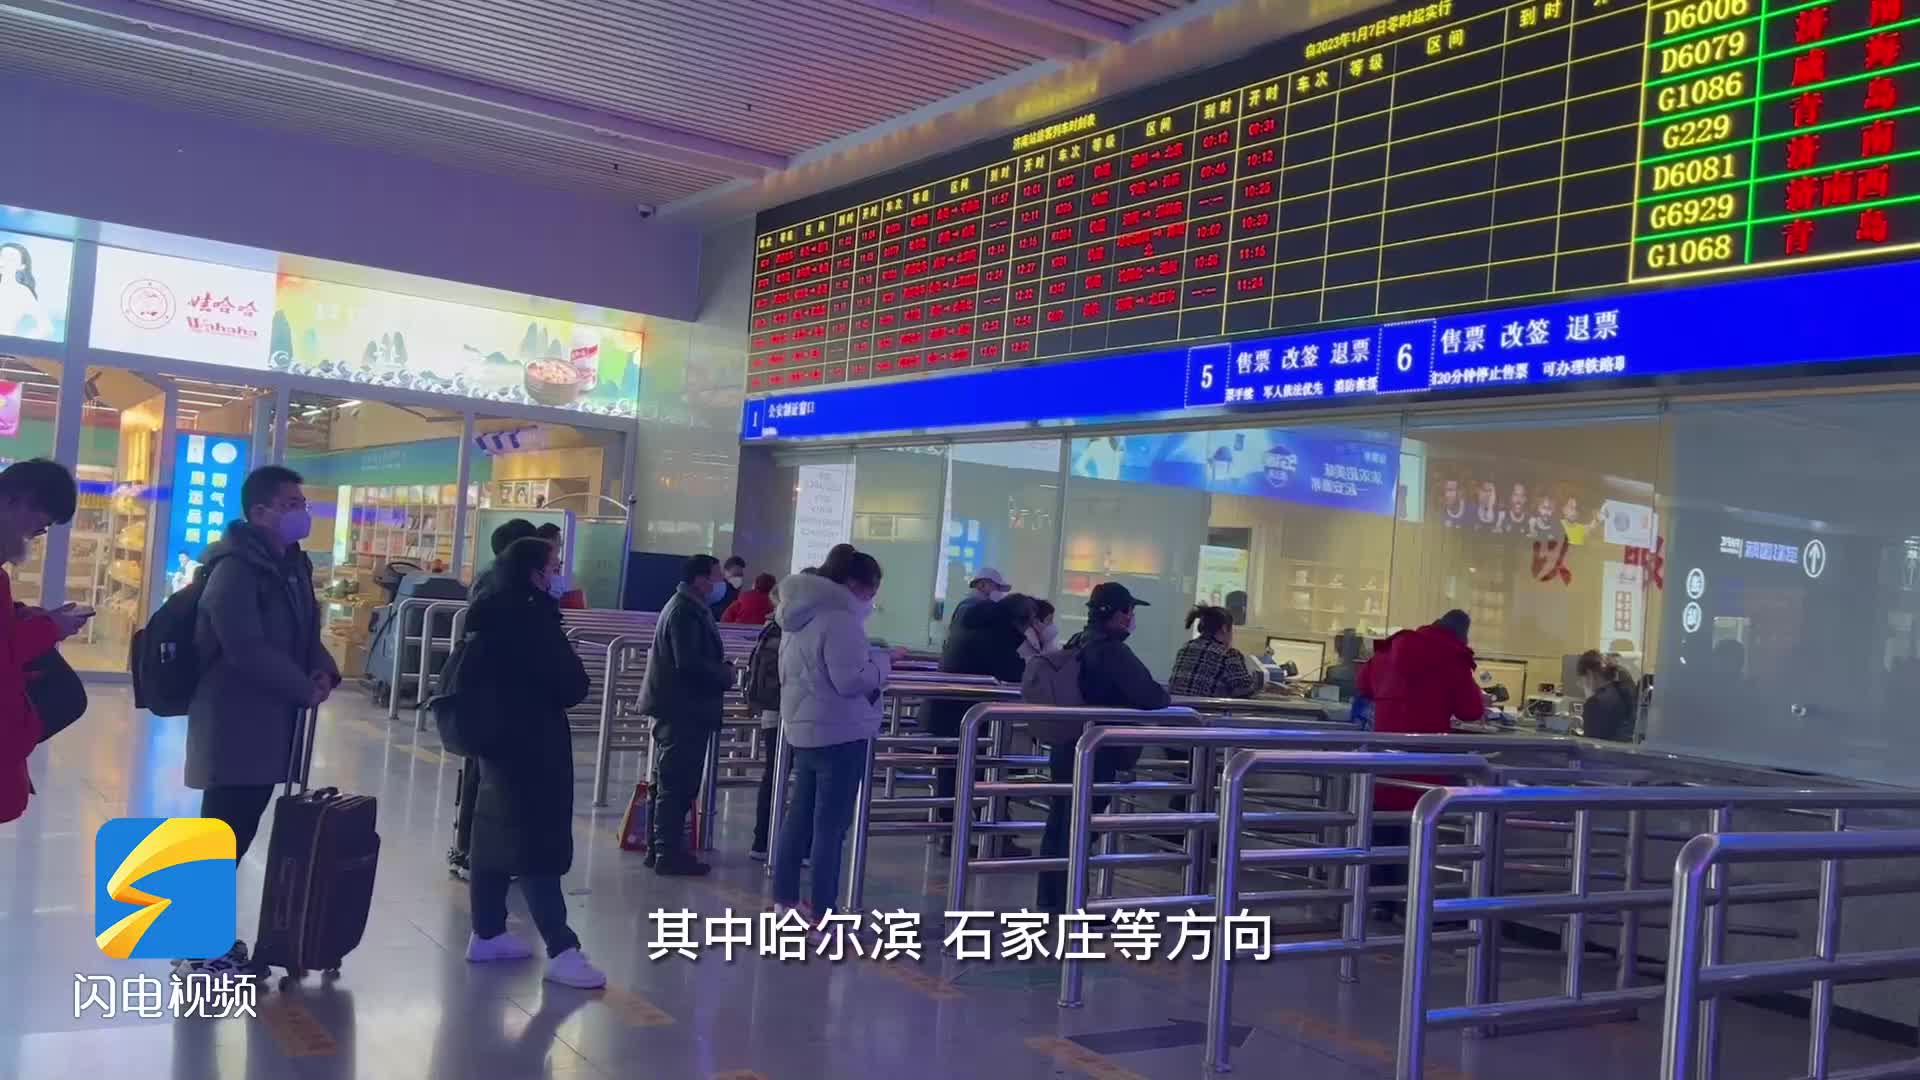 年二十九迎客流高峰 今天约9万人在济南三大火车站乘车